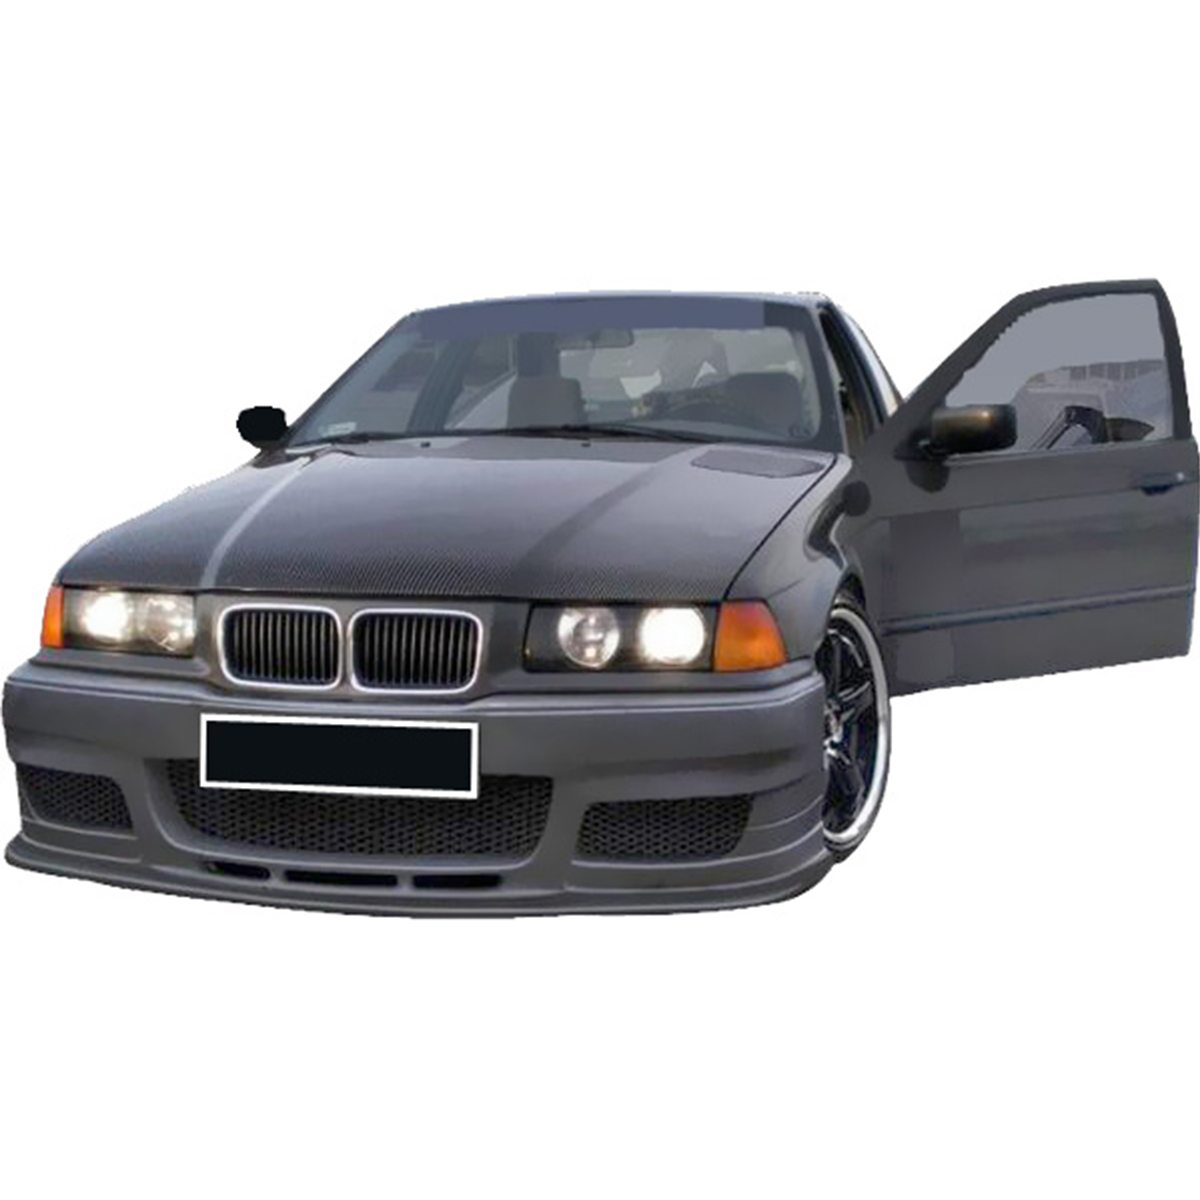 BMW-E36-Inferno-frt-PCM007